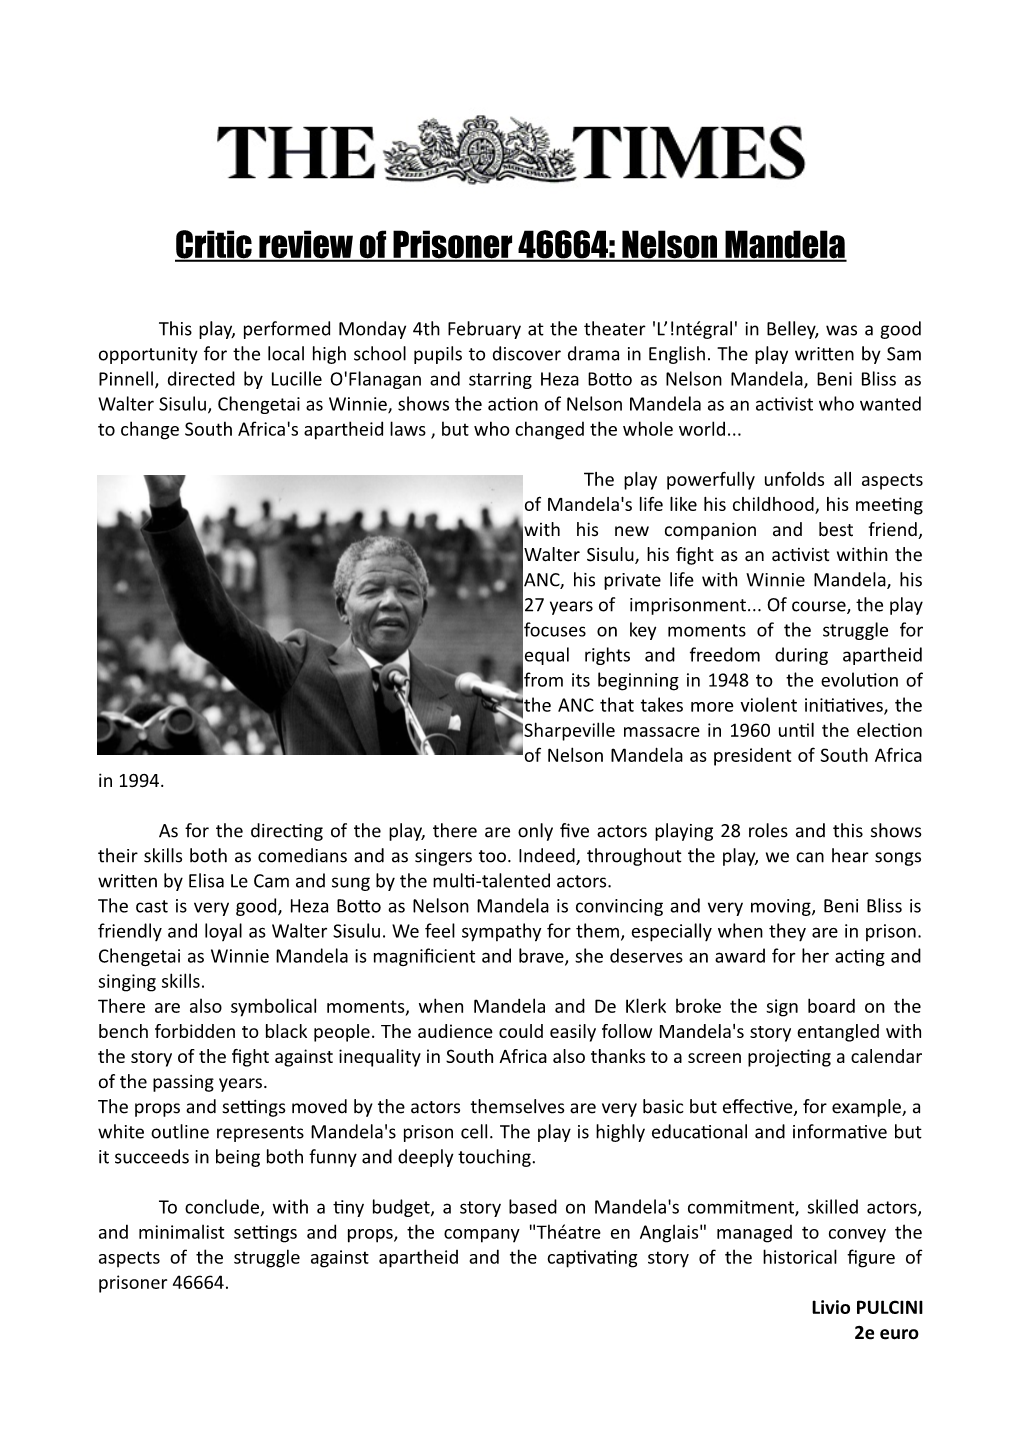 Critic Review of Prisoner 46664: Nelson Mandela